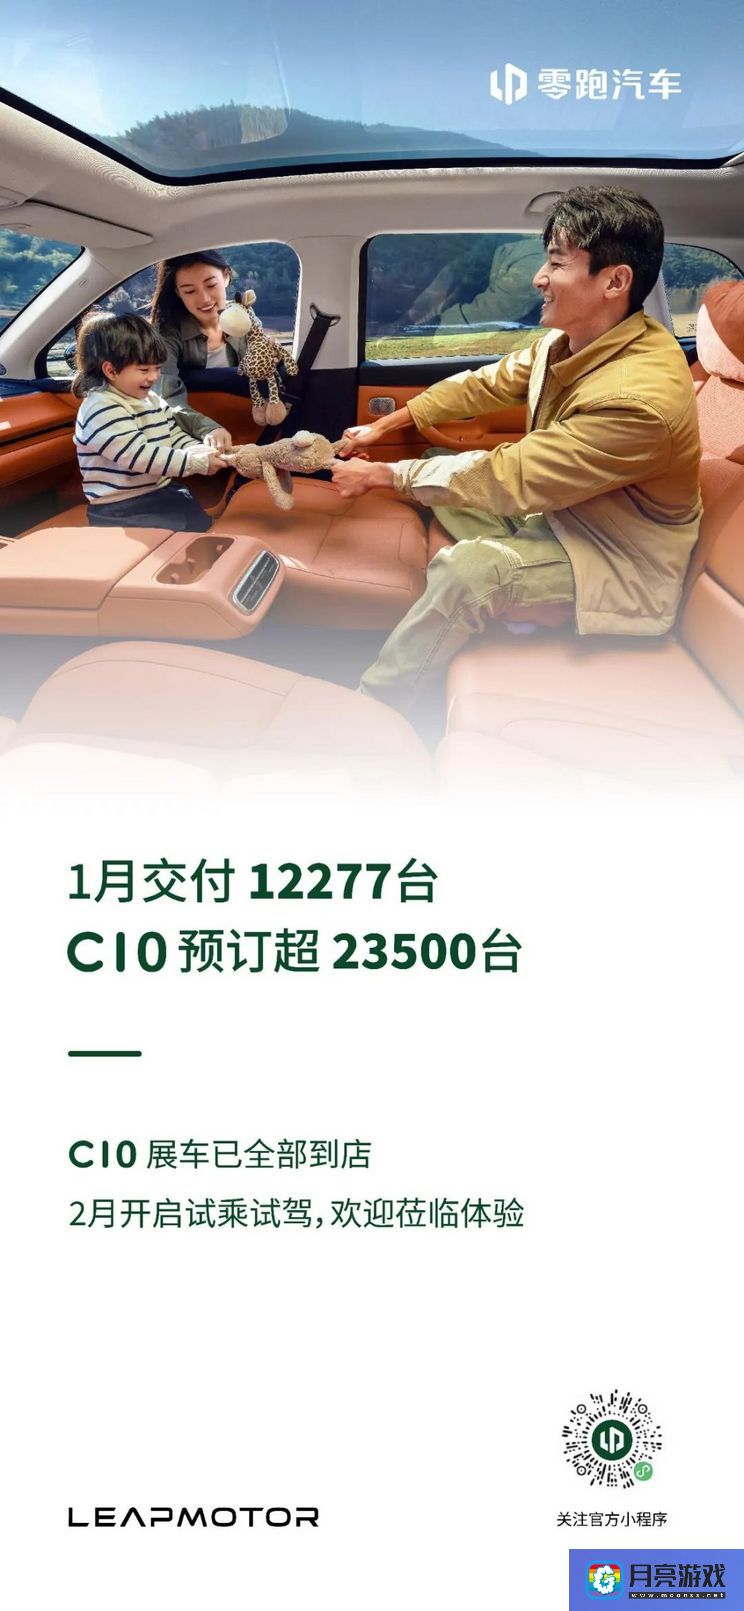 汽车-C10预订超23500台 零跑1月交付12277台-专题资讯